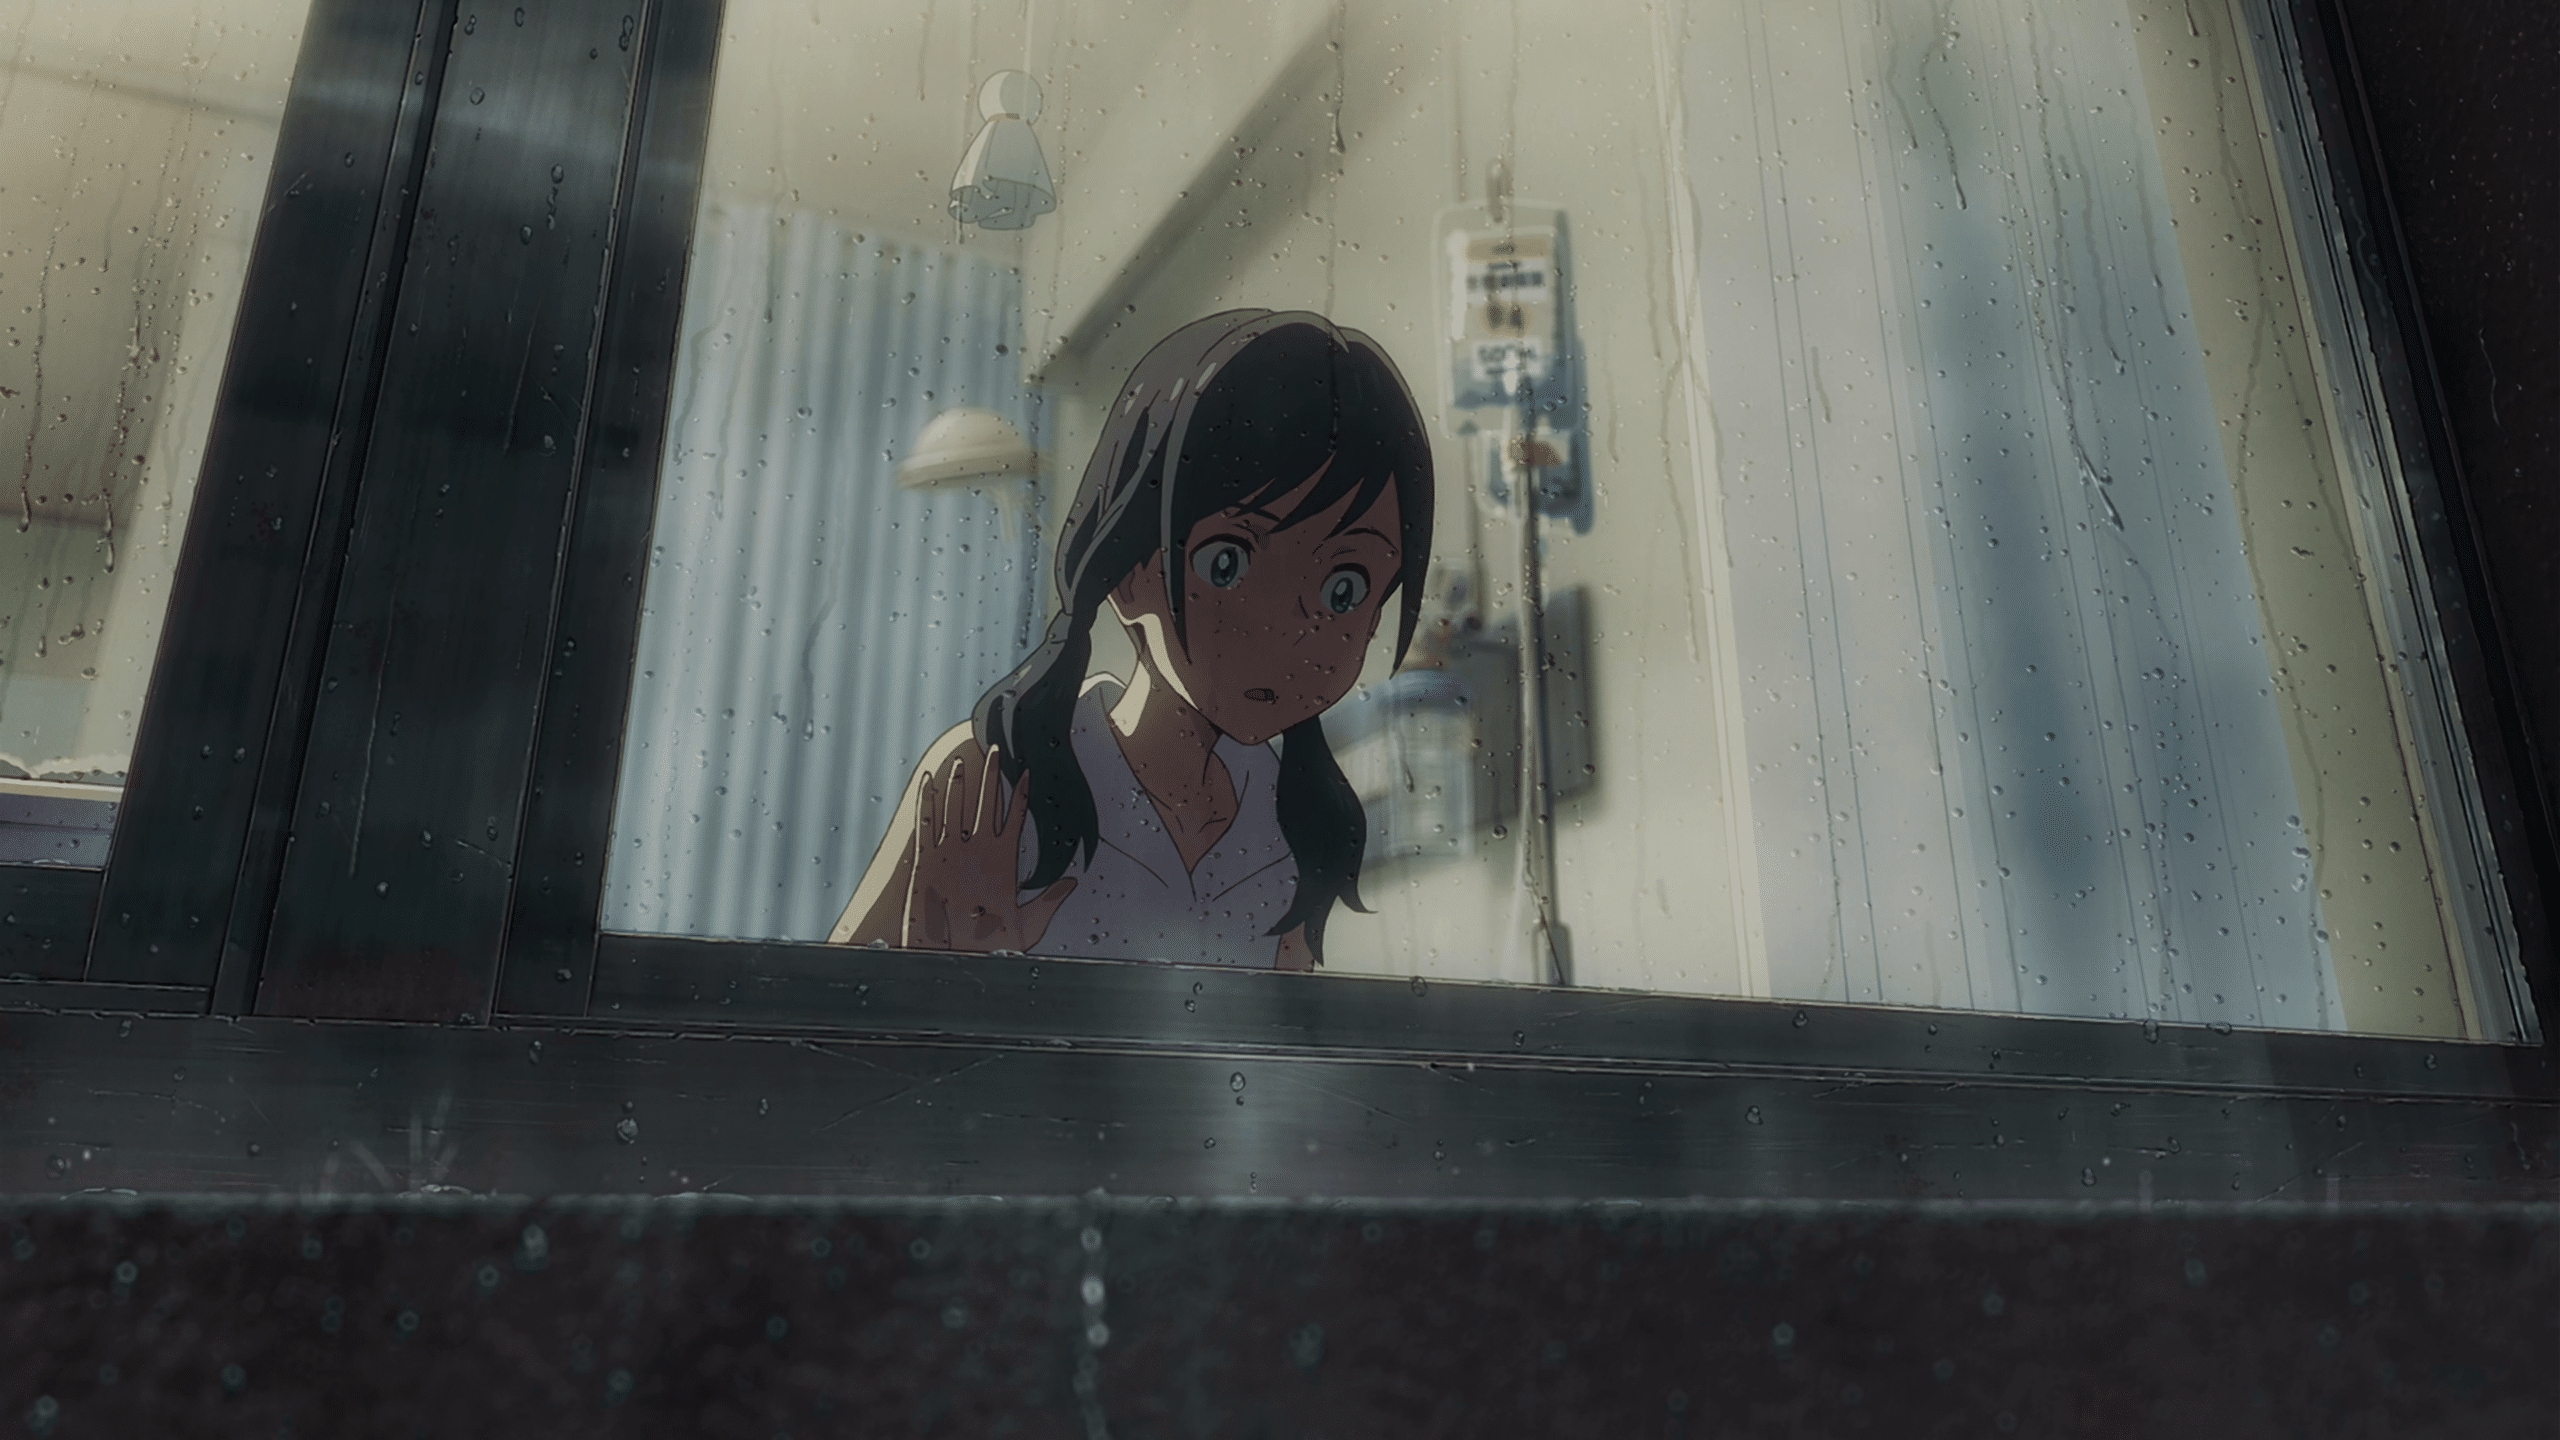 Makoto Shinkai, de 'Your Name' e 'O Tempo com Você', revela novo filme em  poucos dias (AT)